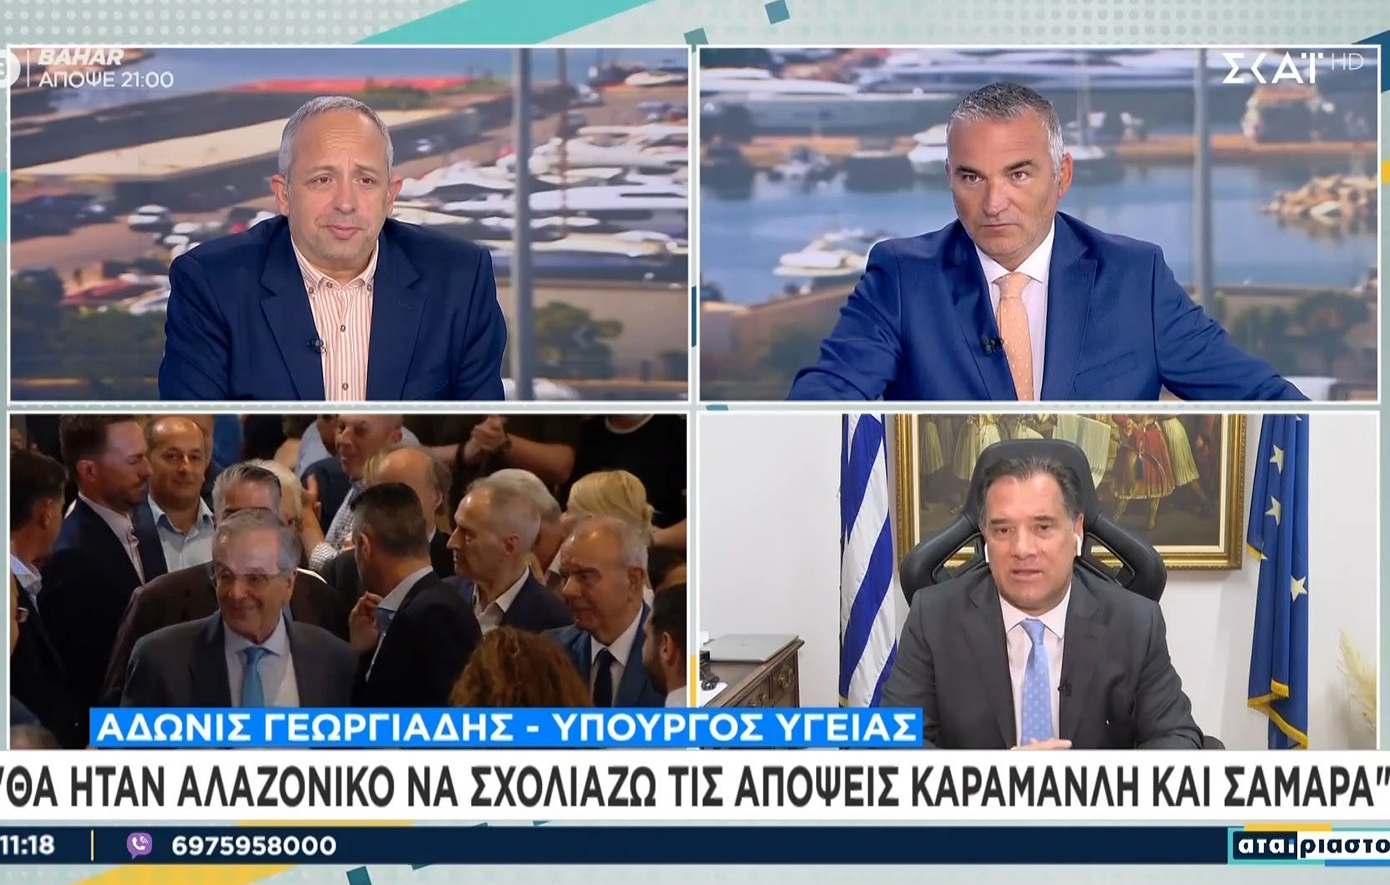 Άδωνις Γωργιάδης για τοποθετήσεις Καραμανλή-Σαμαρά: Δεν σχολιάζω δηλώσεις πρώην πρωθυπουργών